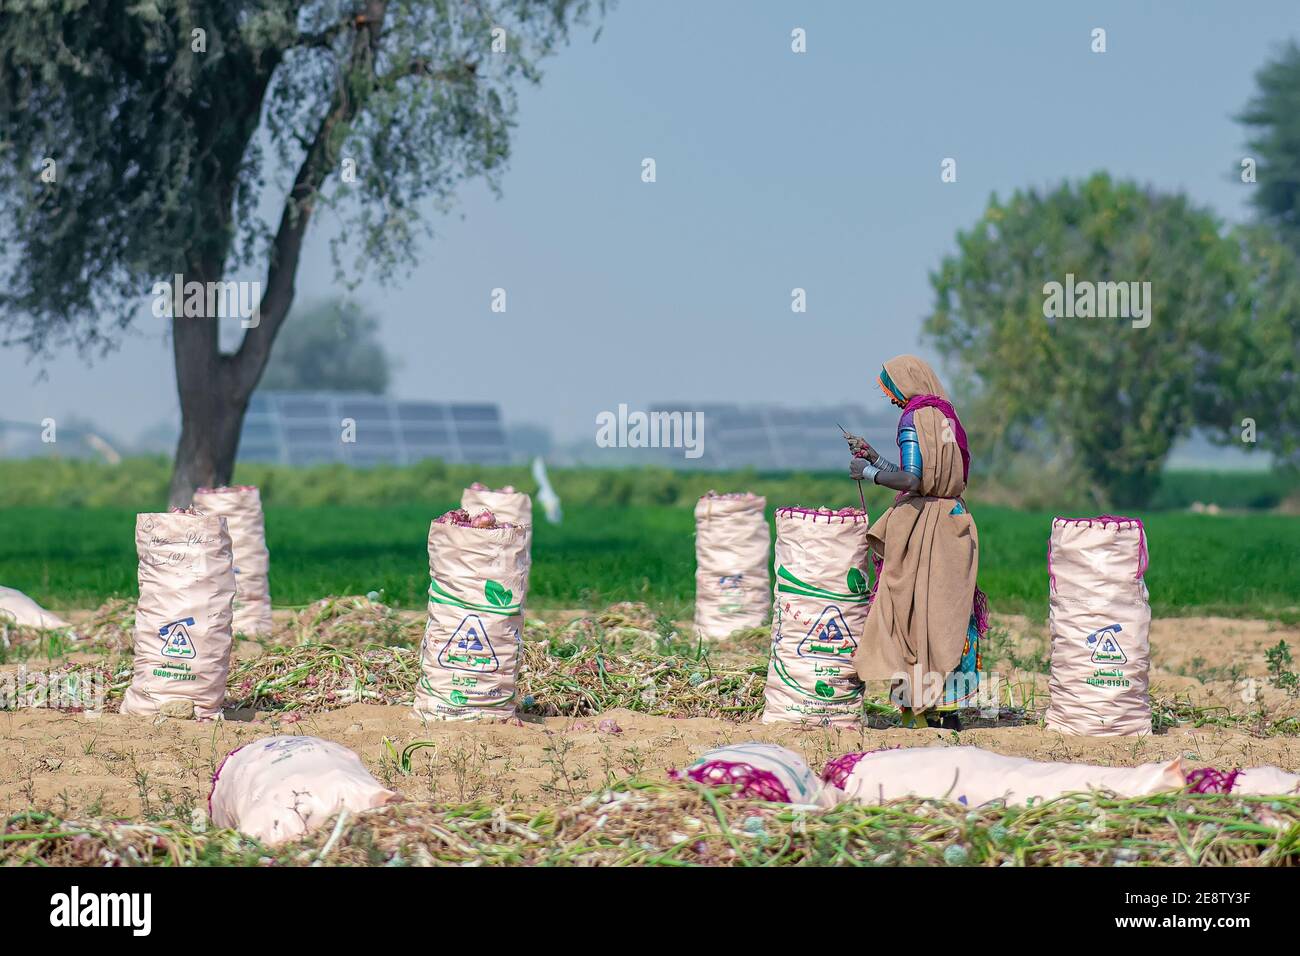 Pile d'oignon rouge. L'oignon récolté est empilé dans le champ de Jamshoro Sindh. Banque D'Images